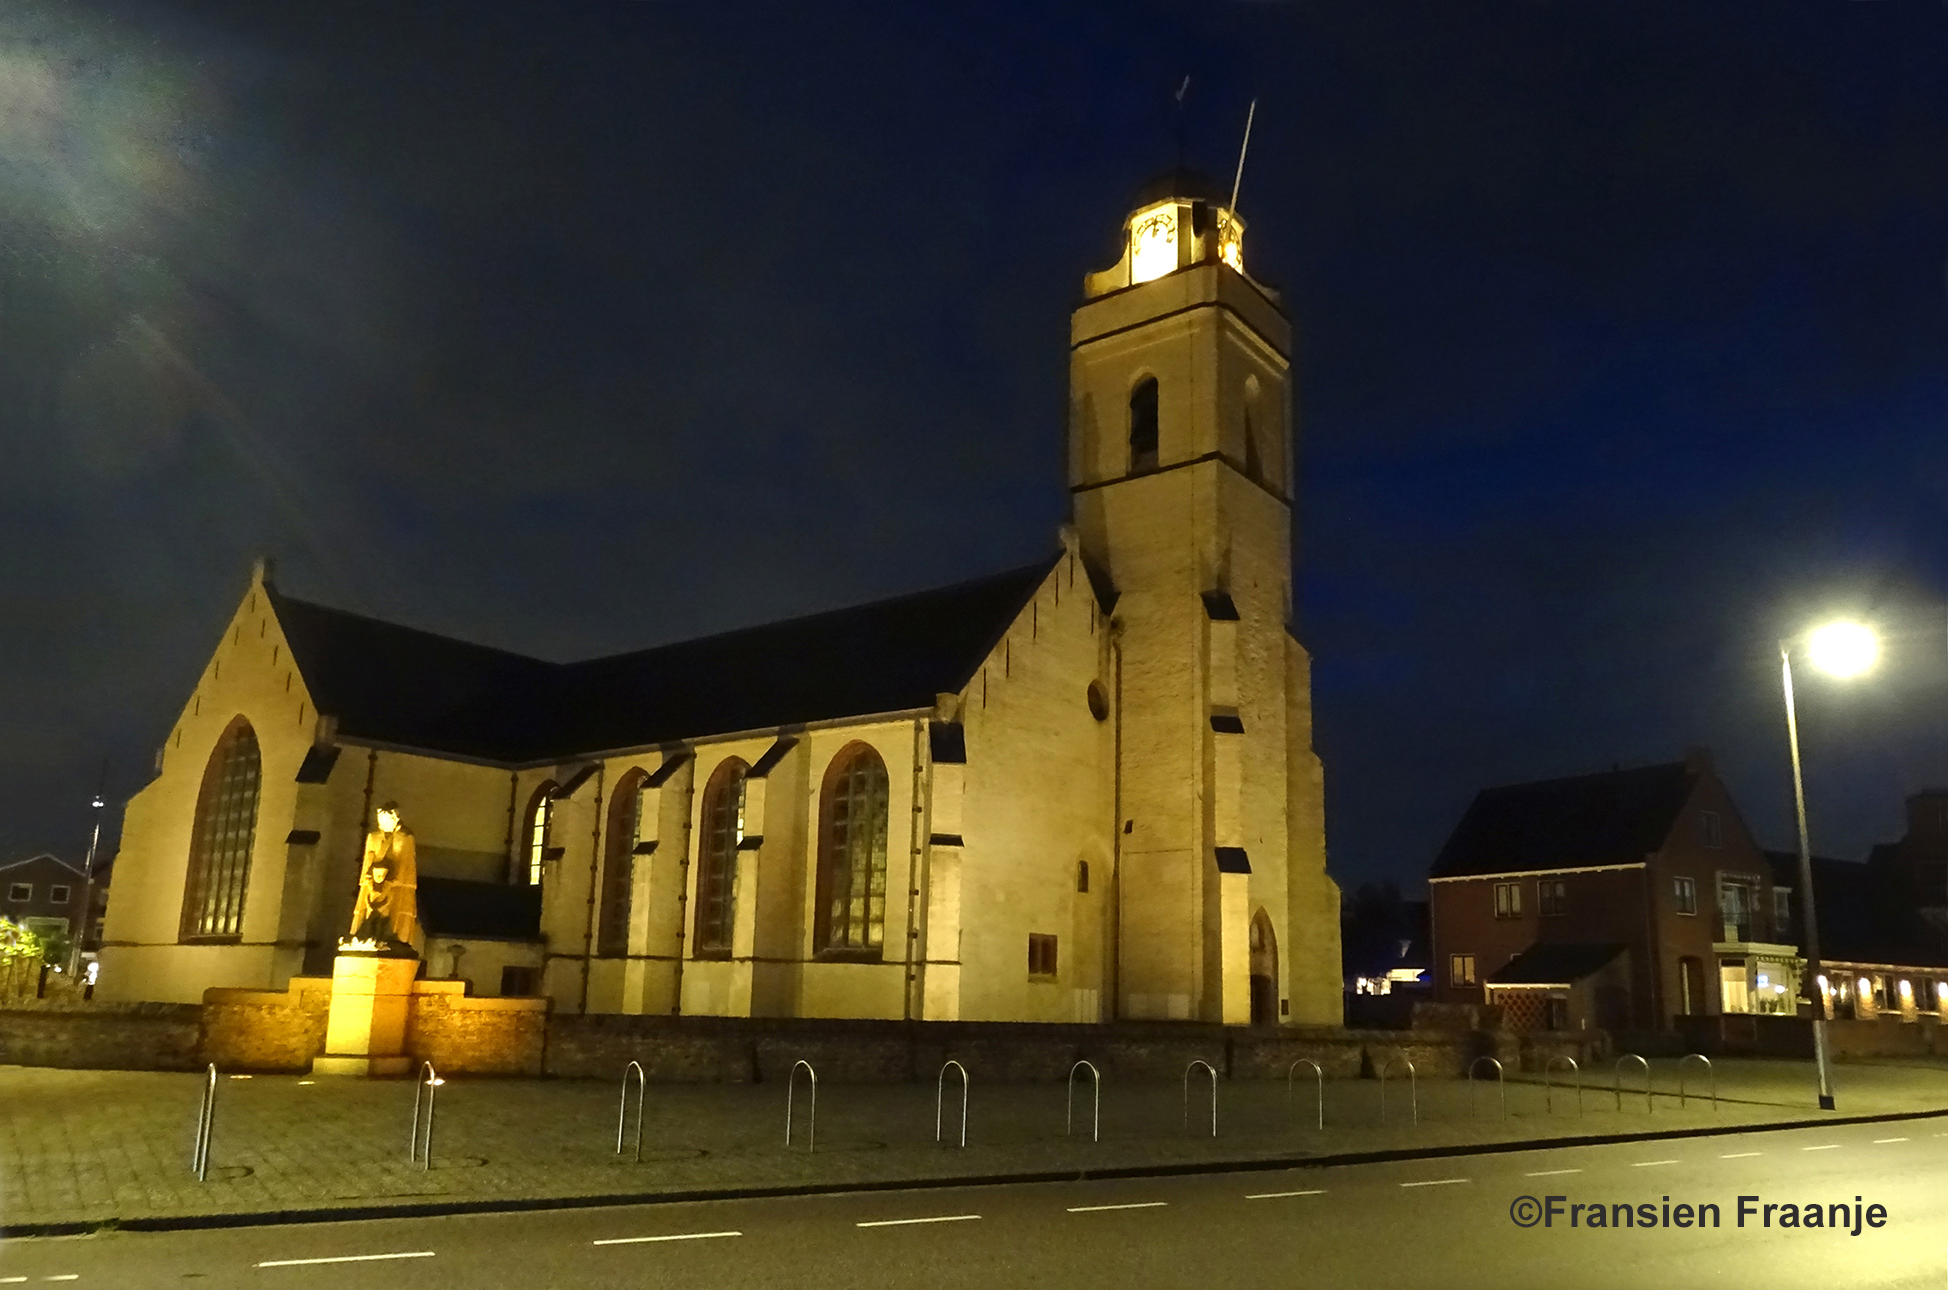 Vanavond maakte Fransien deze prachtige opname van het Witte Kerkje in Katwijk aan Zee - Foto: ©Fransien Fraanje